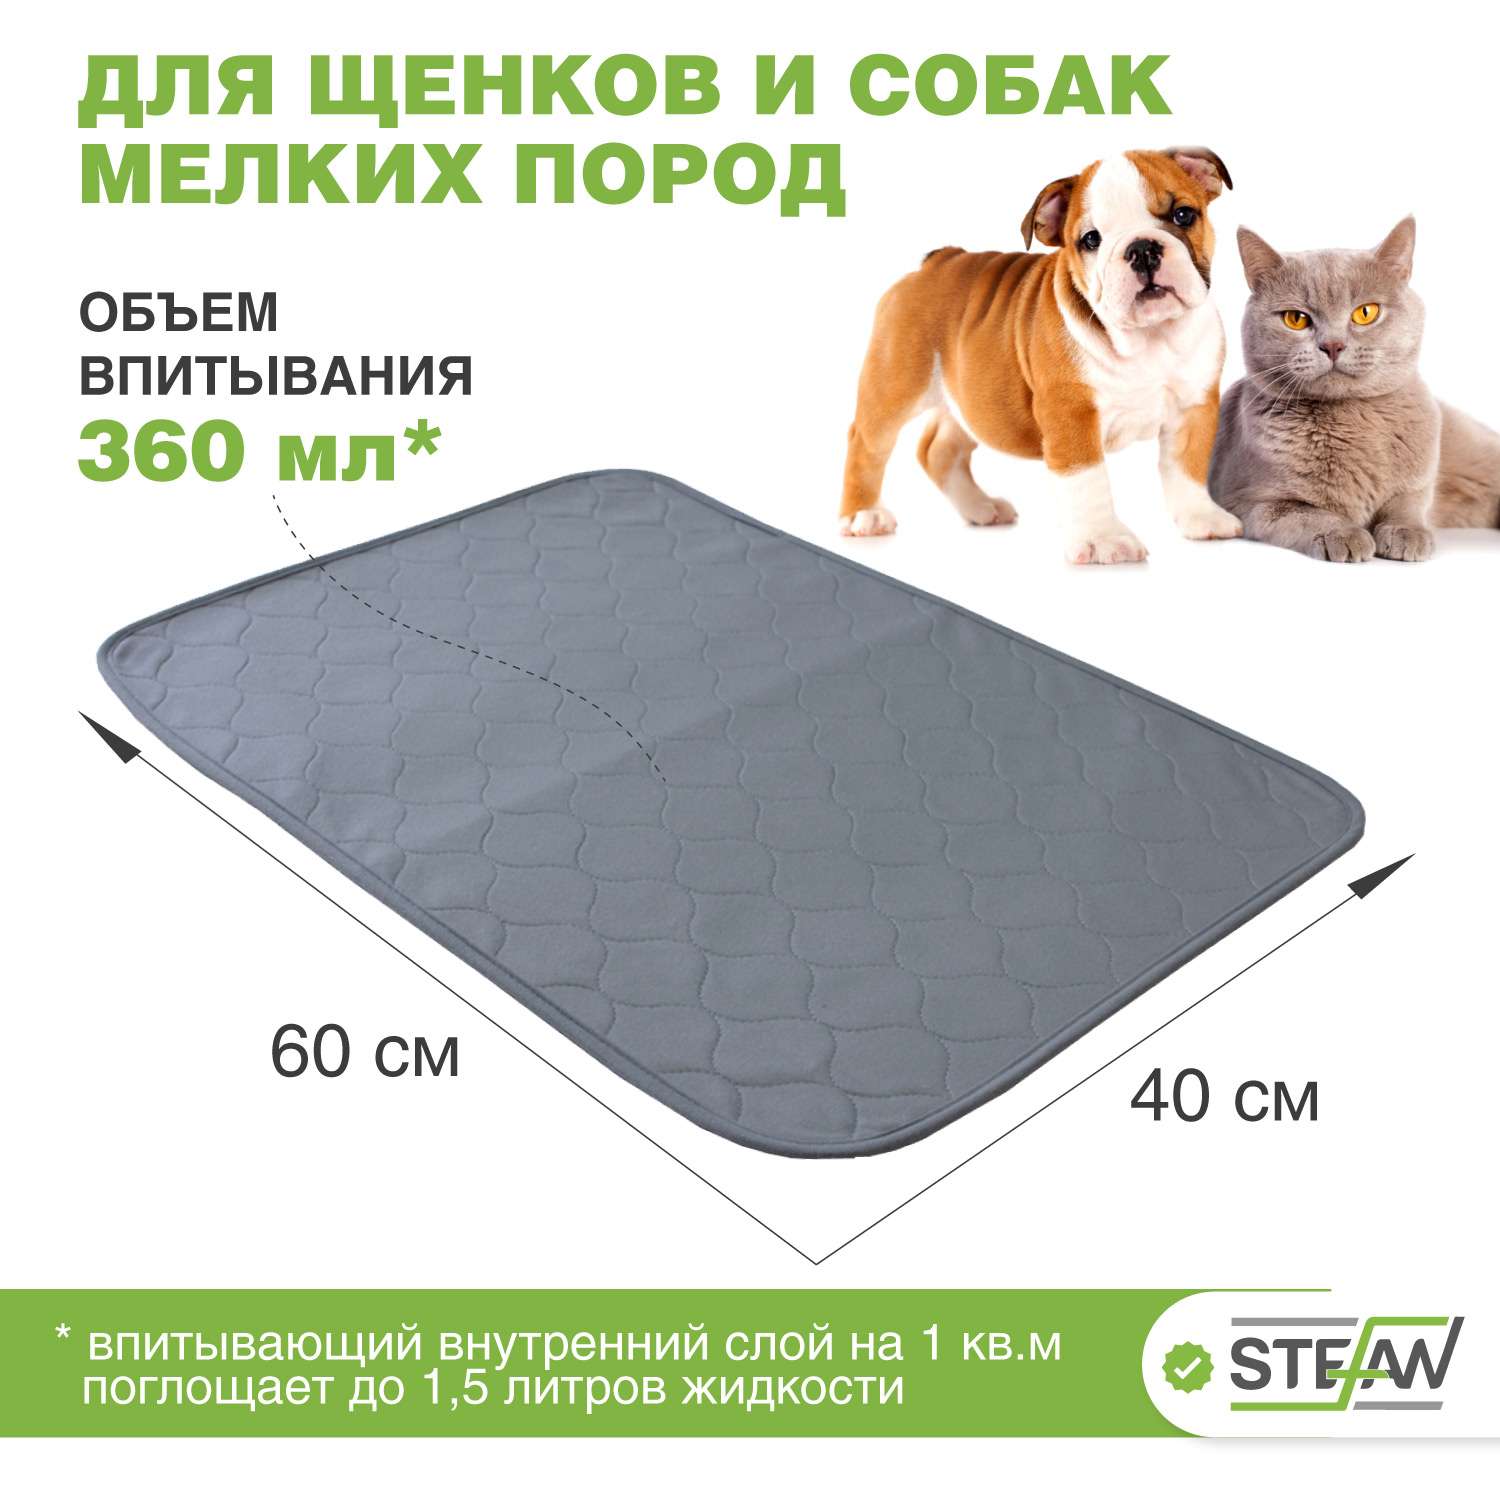 Пеленка для животных Stefan впитывающая многоразовая серая 40х60 см - фото 2